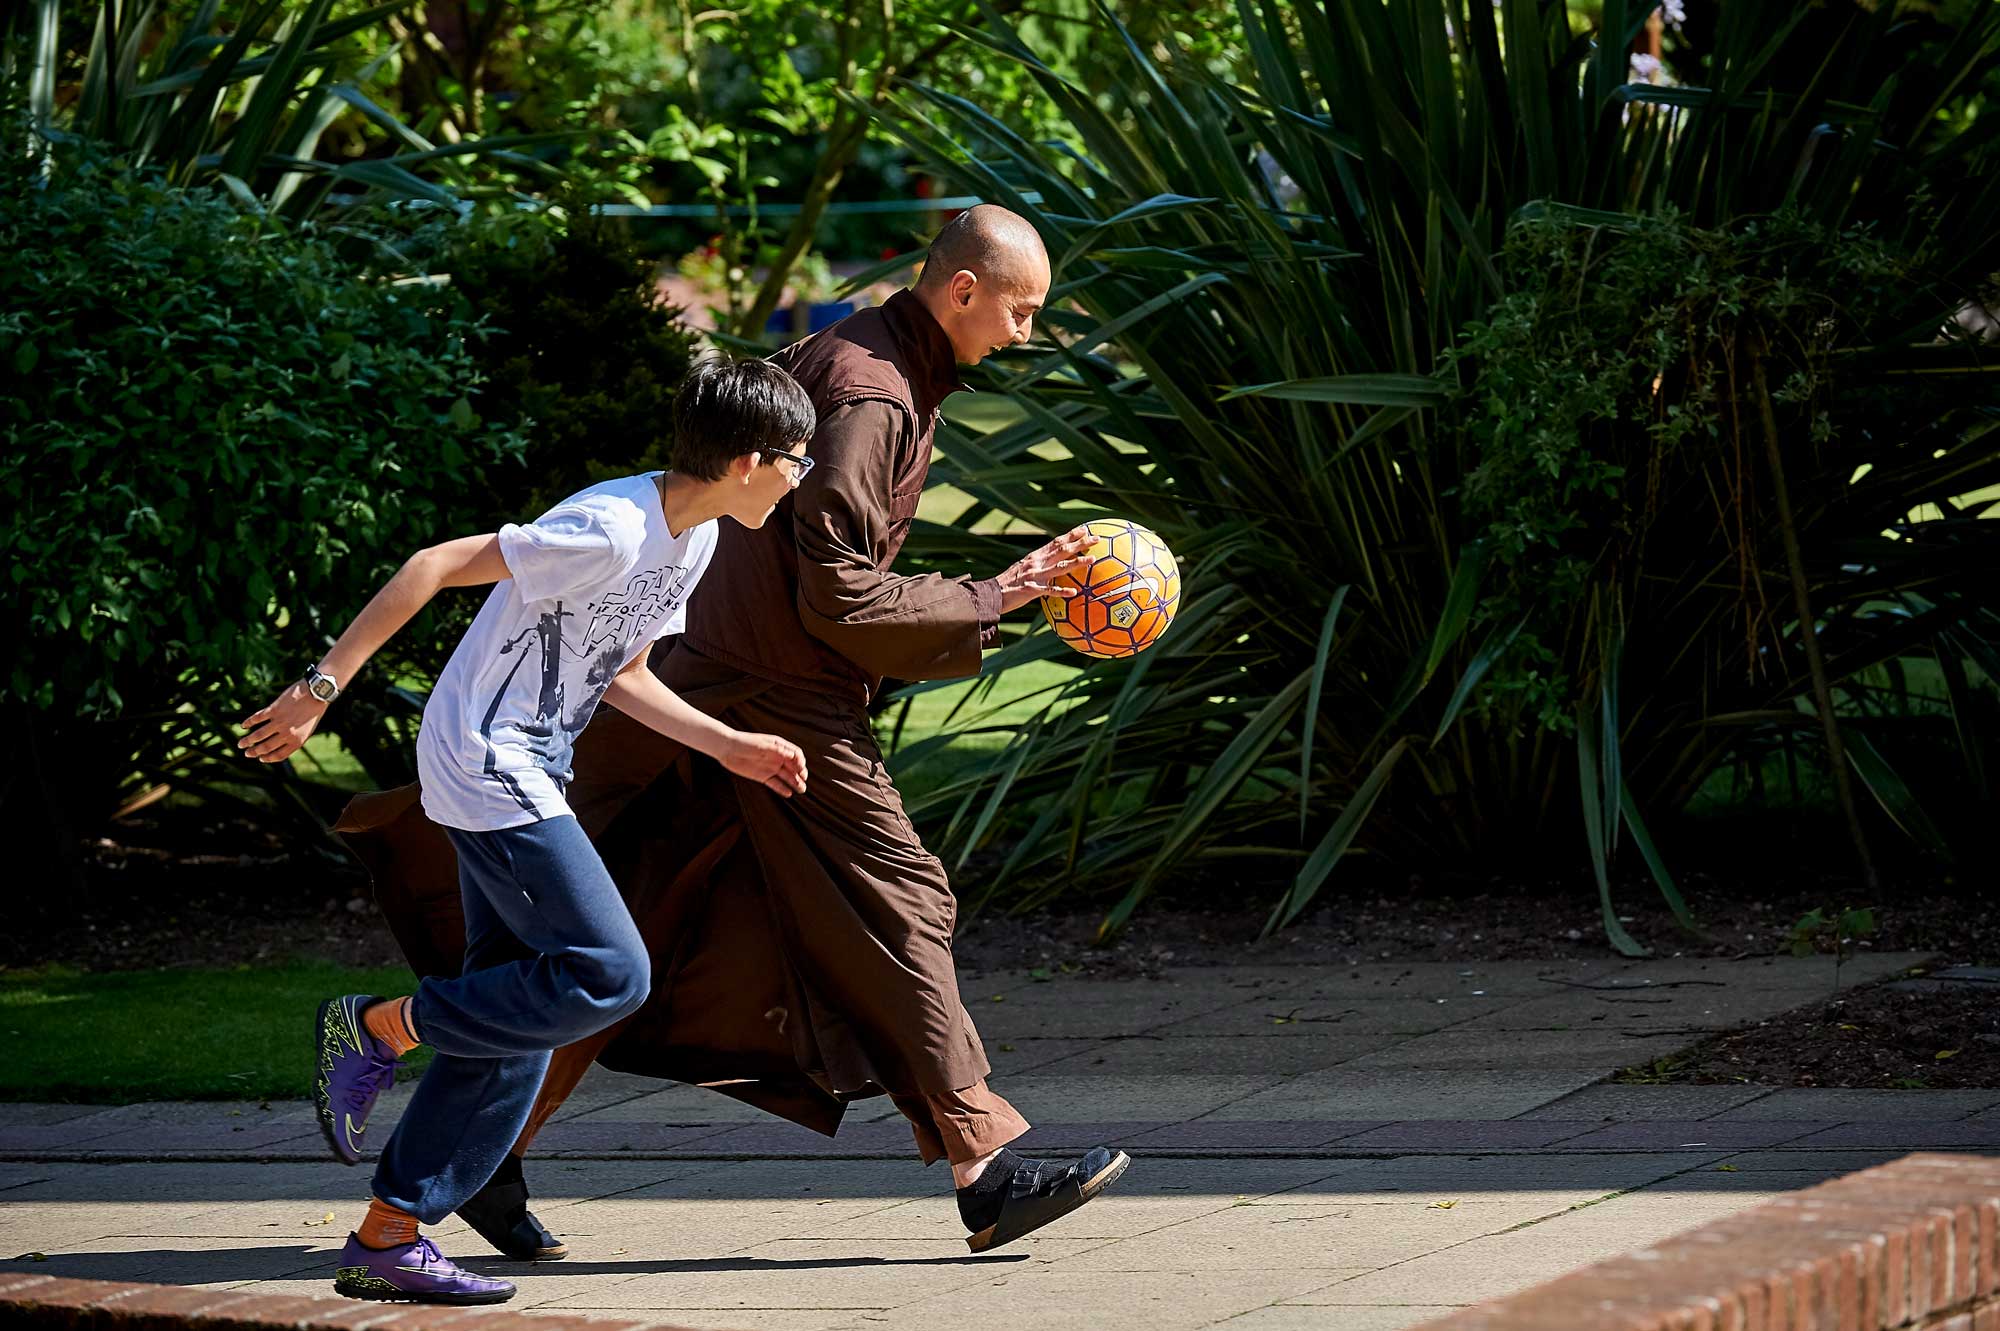 Monastic and child playing basketball